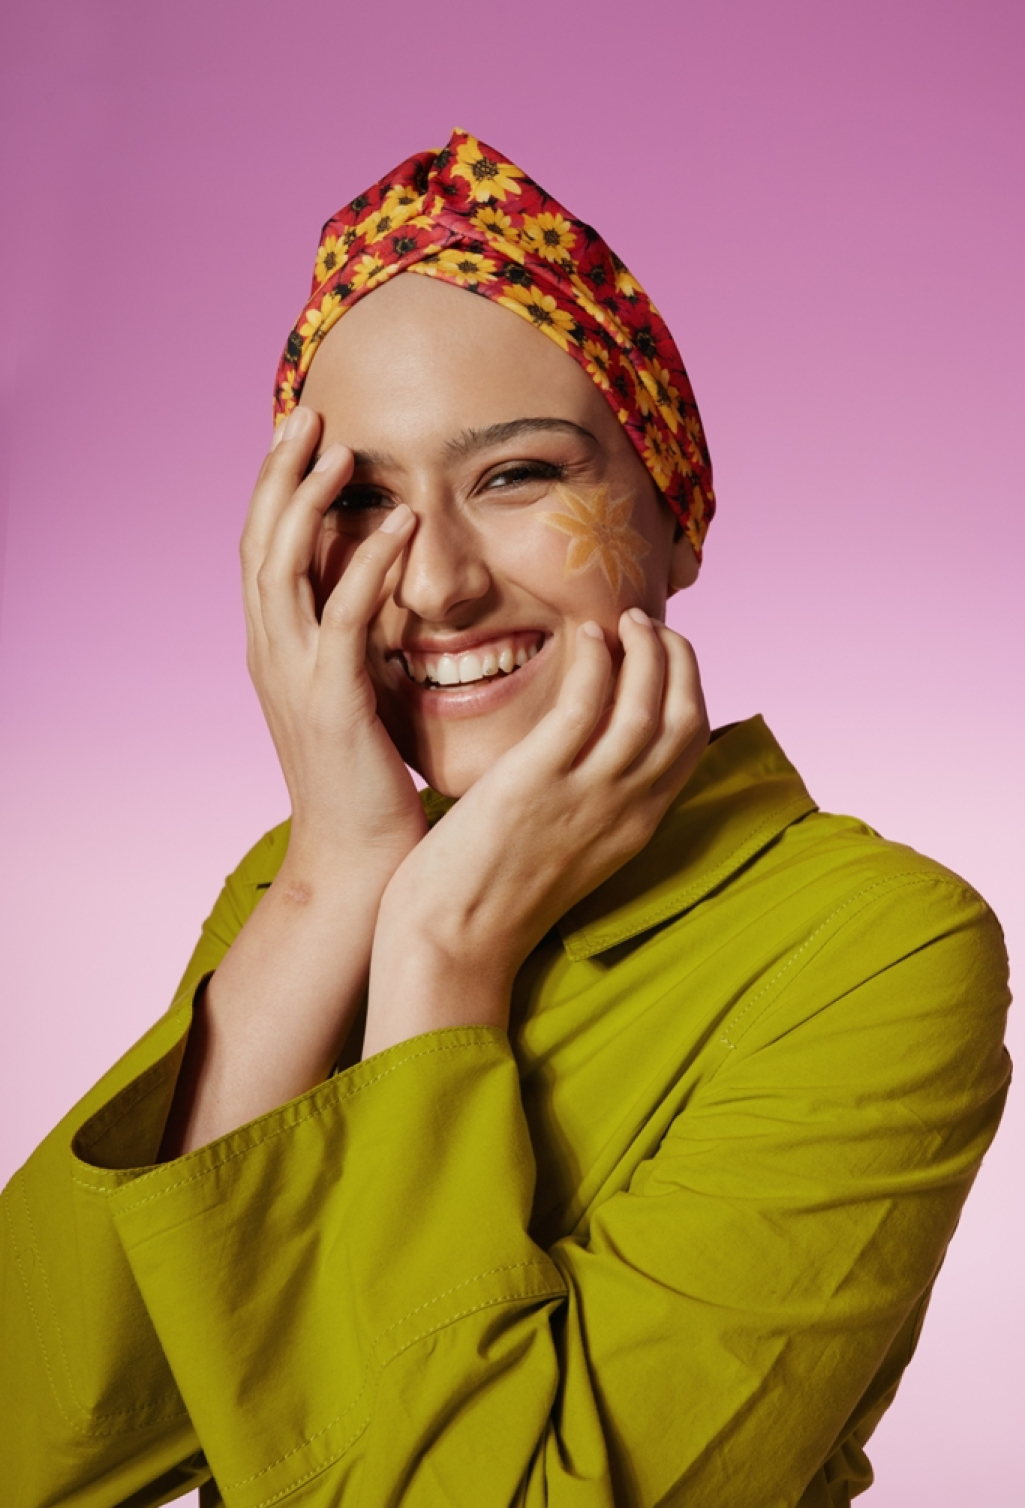 Zografos x Alma Zois: Ένα project γεμάτο ομορφιά, για τις γυναίκες που αντιμετωπίζουν τον καρκίνο